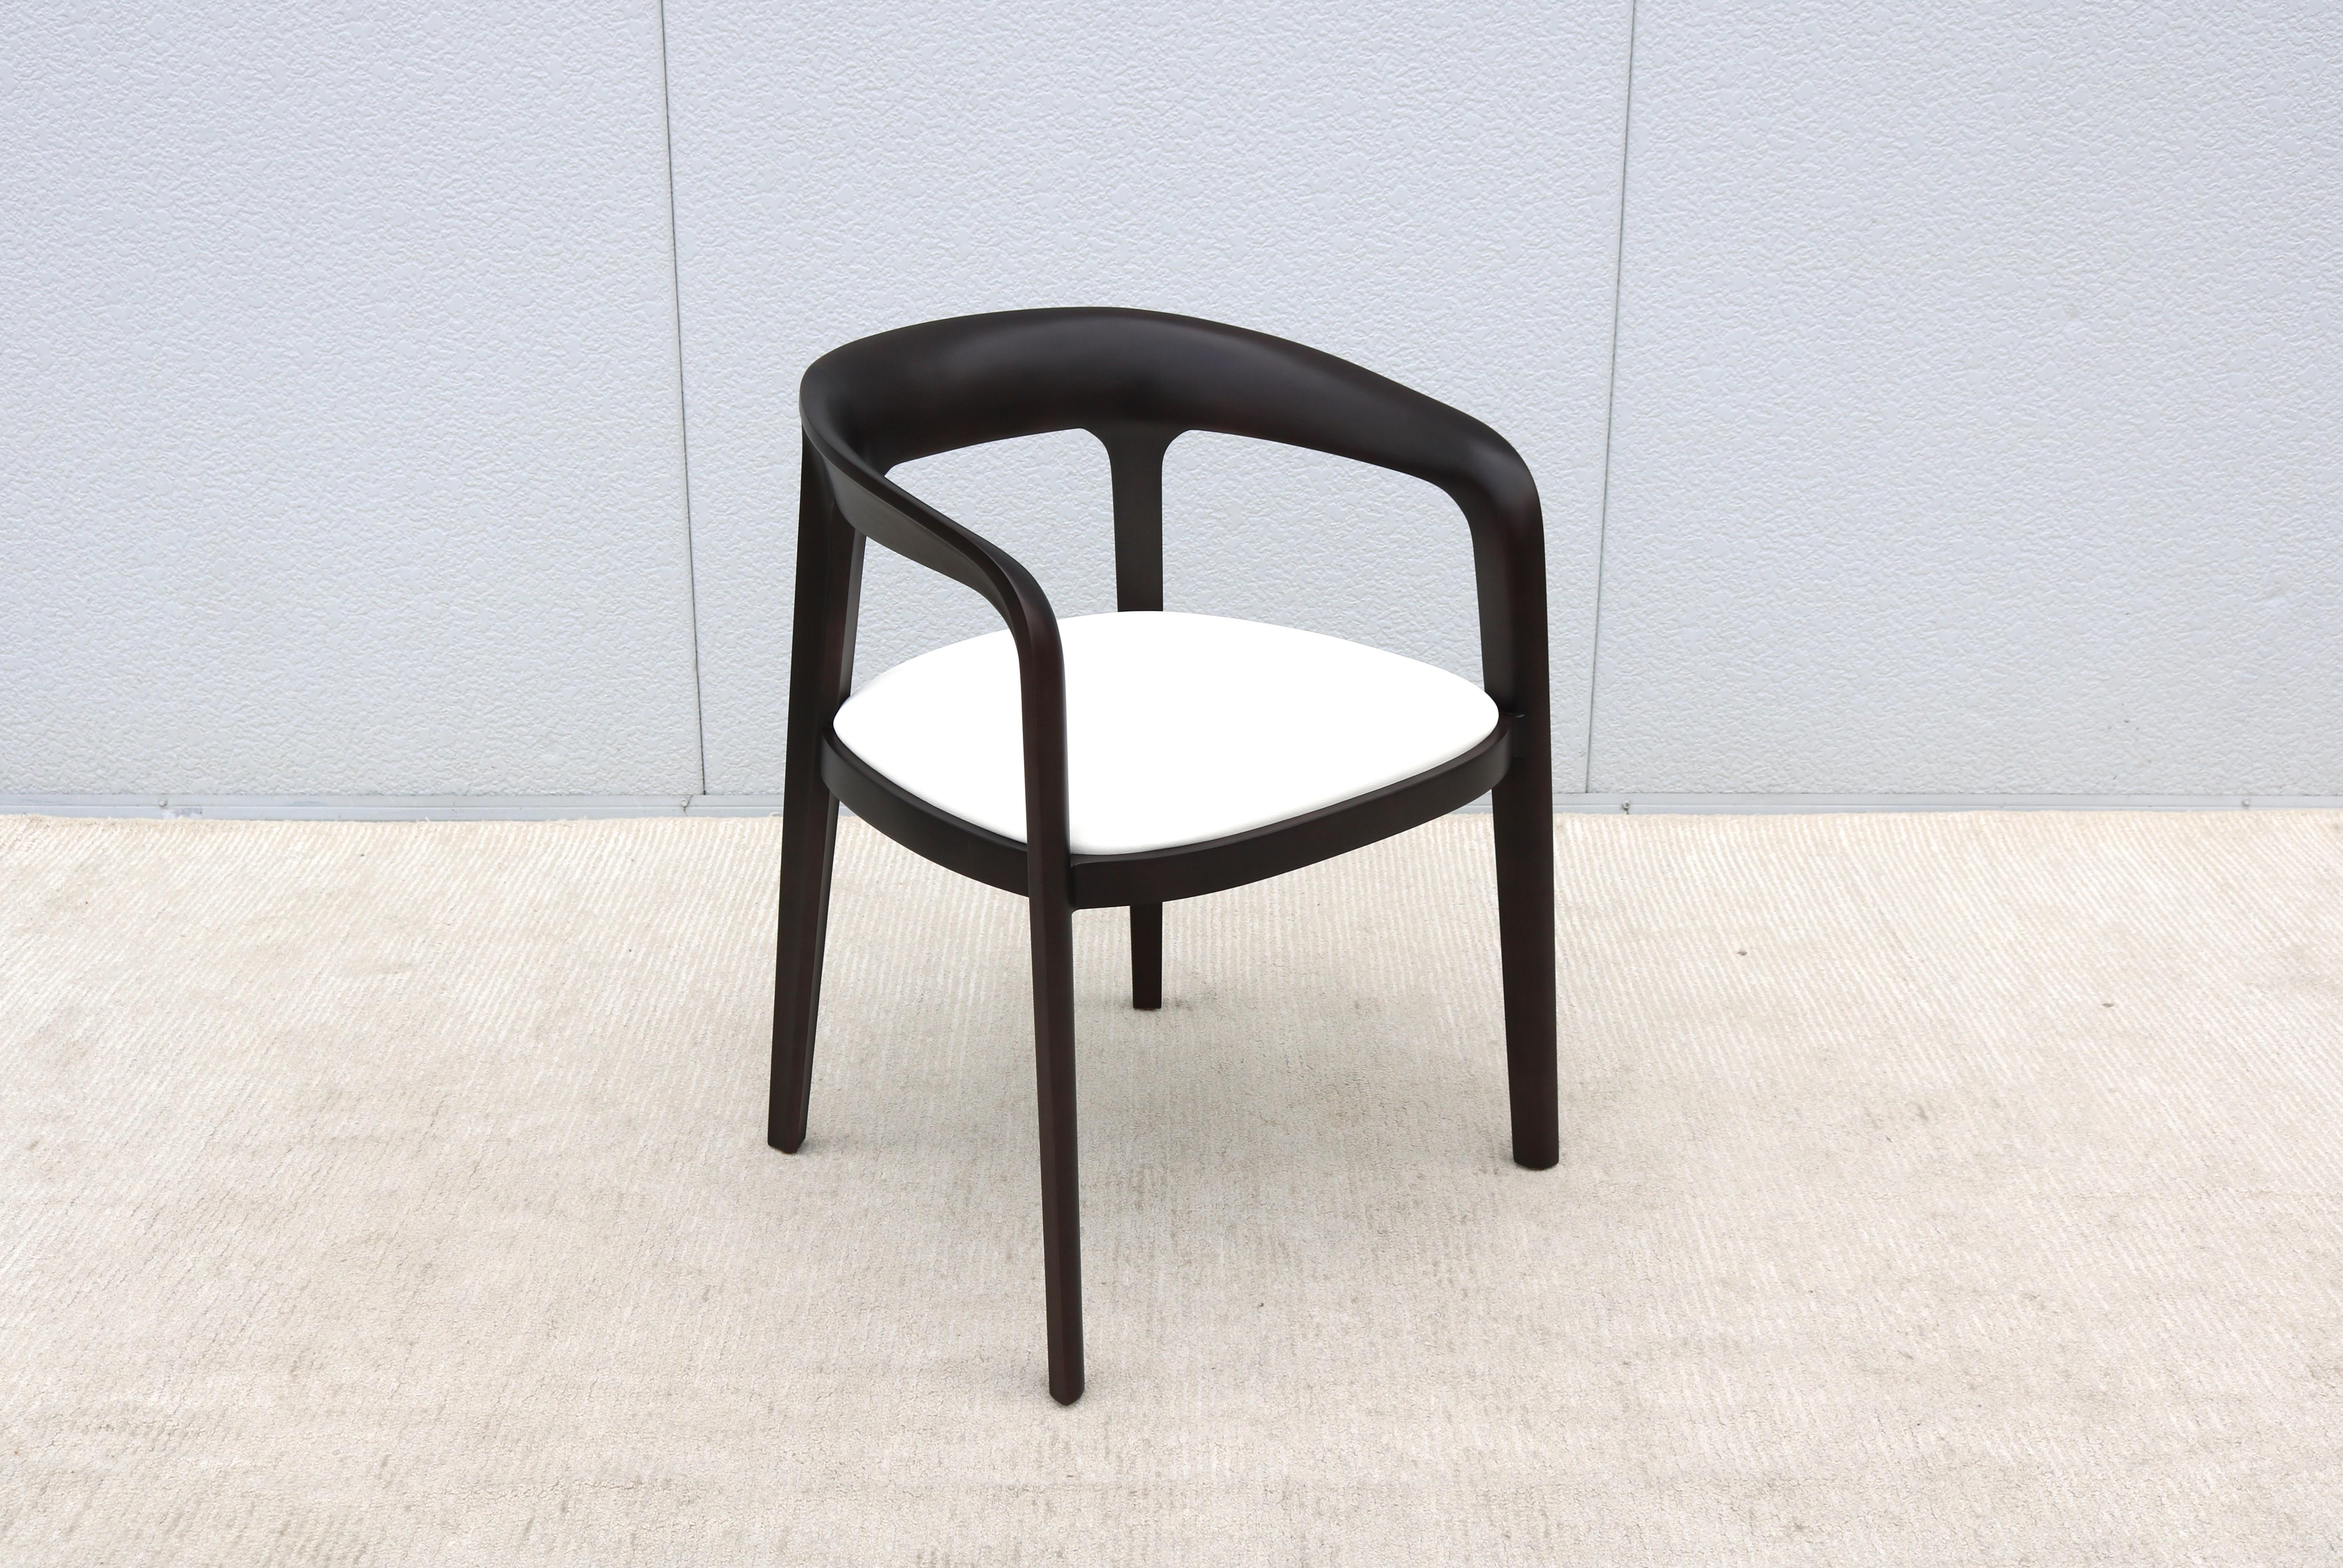 Fabuleuse chaise d'invité ou de bureau Corvo par Bernhardt Design.
Corvo est façonné et poncé à la main dans de l'érable américain massif et scellé avec une finition à l'huile naturelle.
Dotée d'un dossier gracieux qui s'avance jusqu'aux accoudoirs,